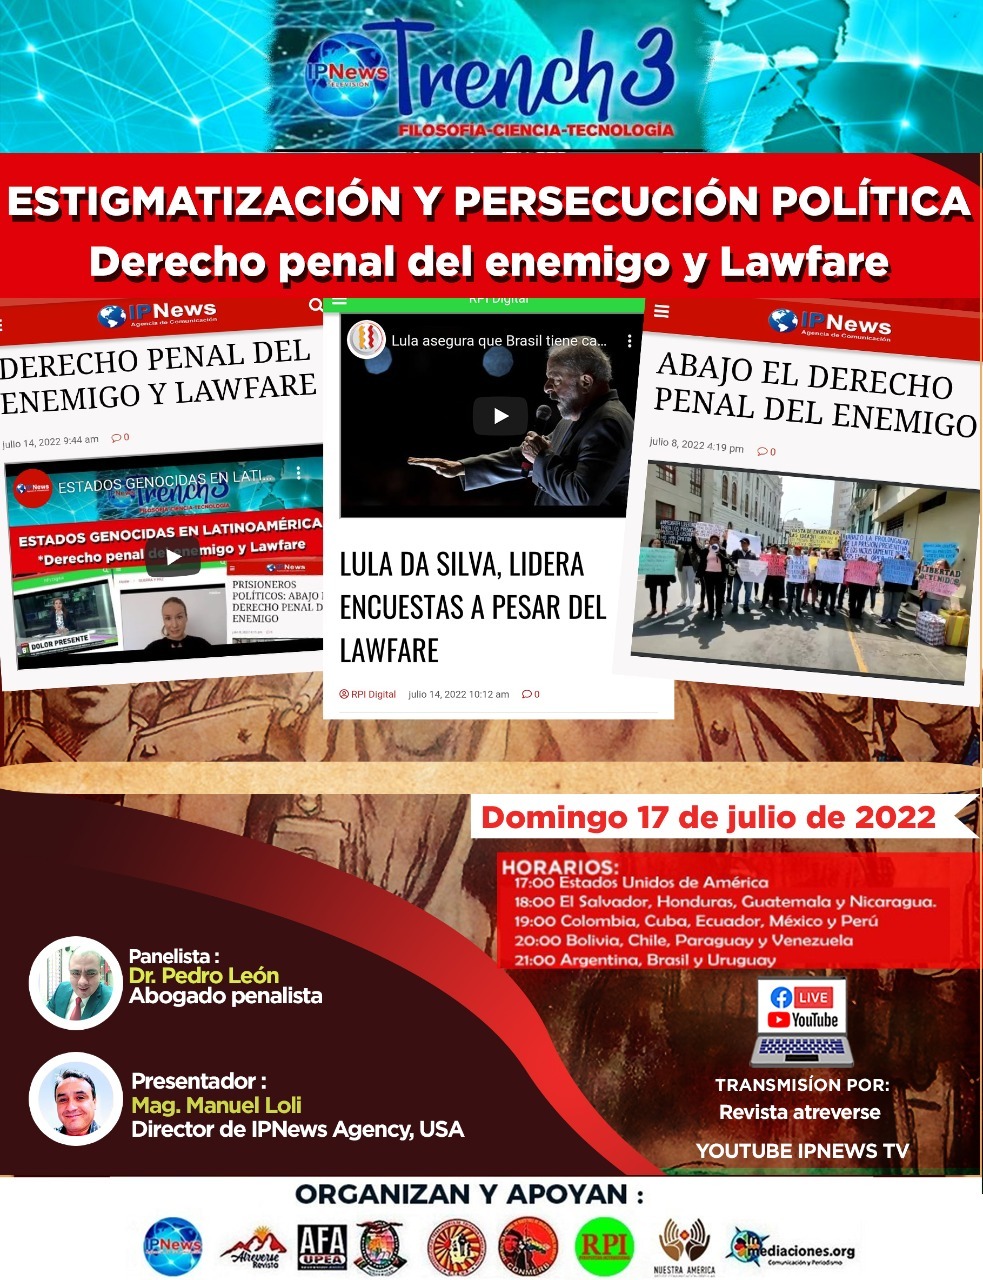 ESTIGMATIZACION Y PERSECUCIÓN POLÍTICA EN EL PERÚ